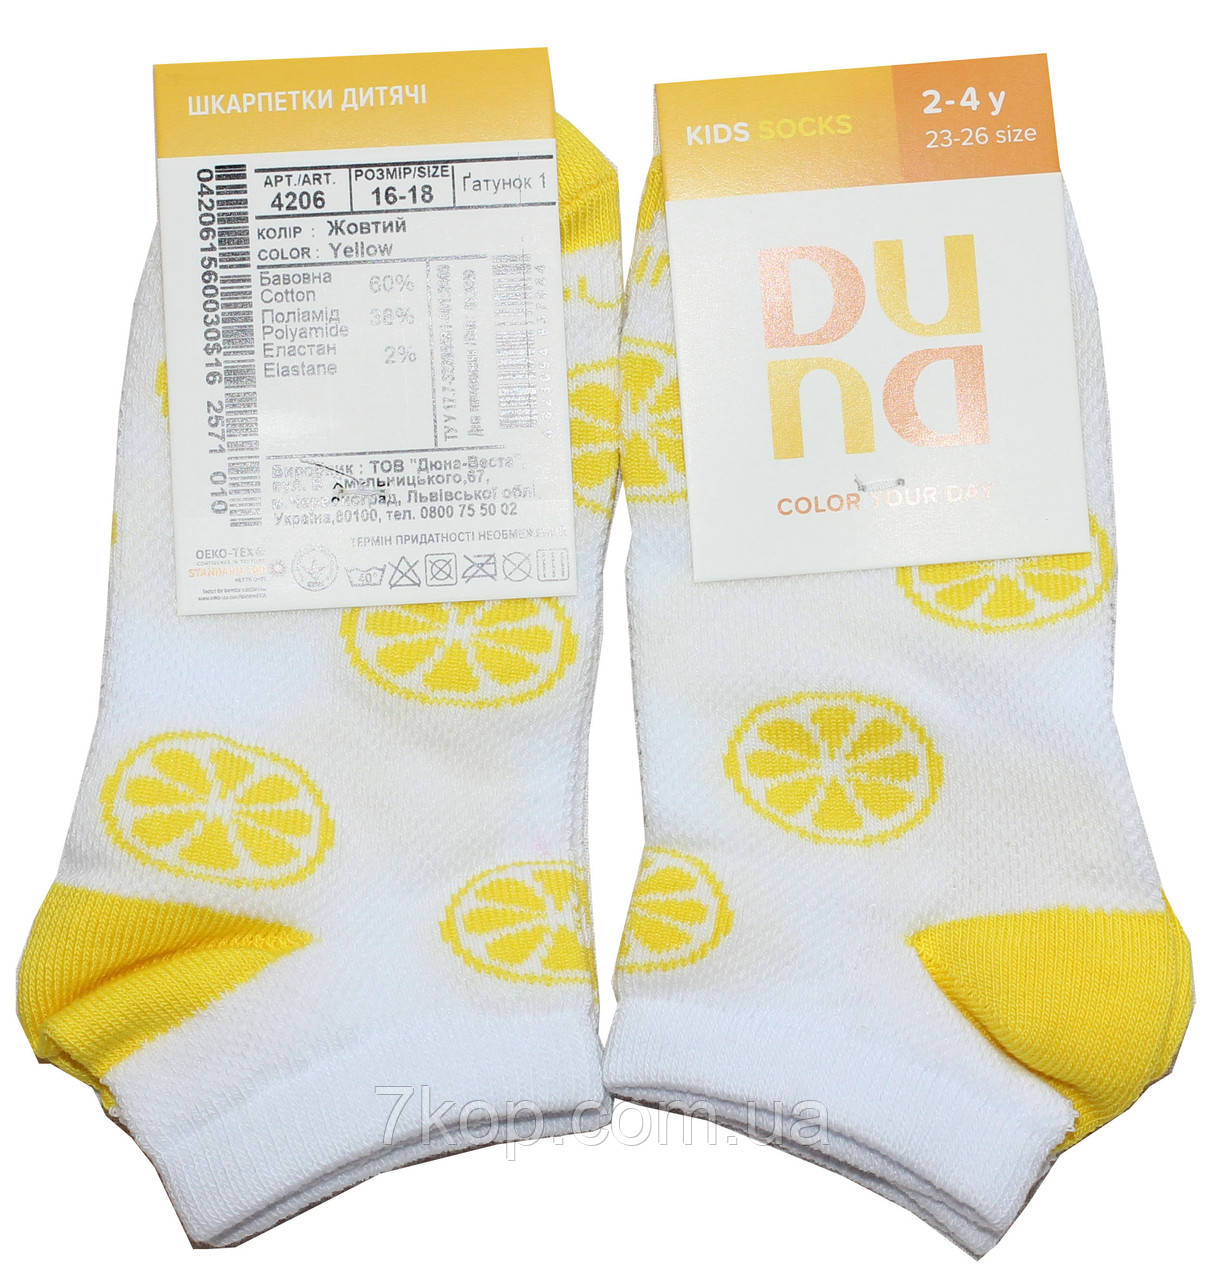 Шкарпетки дитячі літні білі з жовтим, розмір 16-18, Дюна